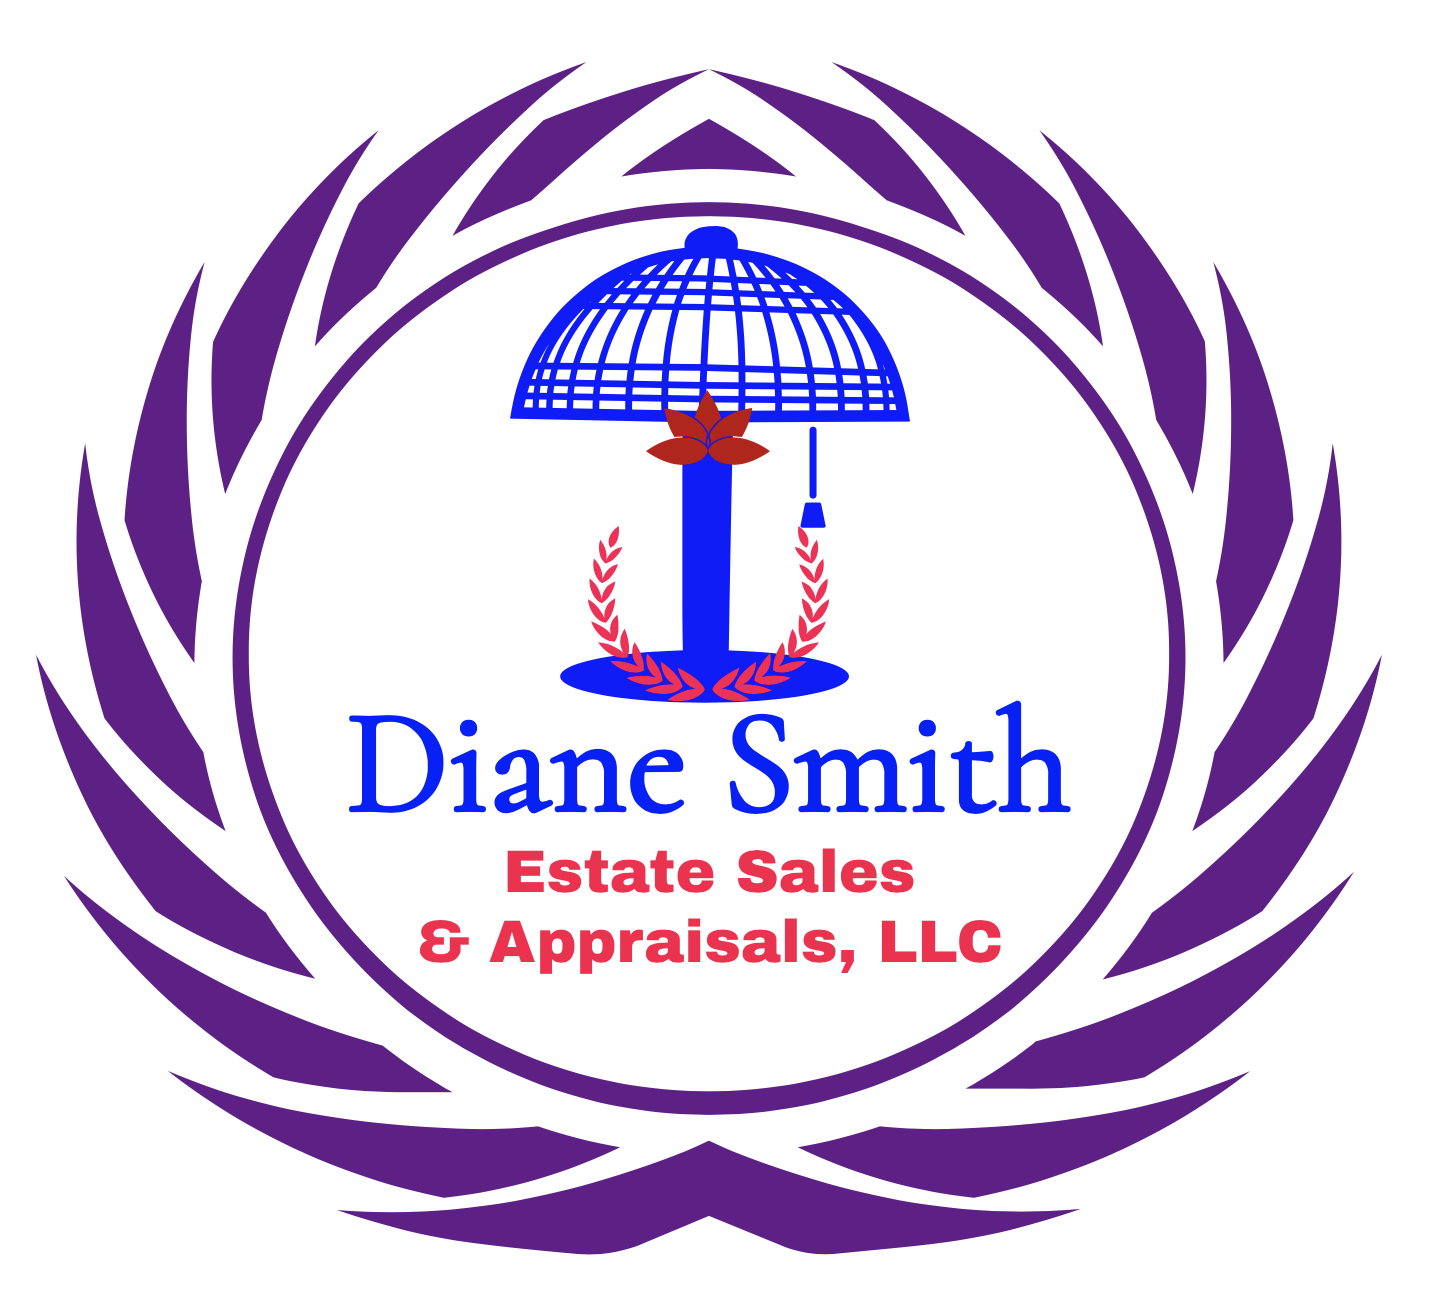 Diane Smith Estate Sales & Appraisals, LLC